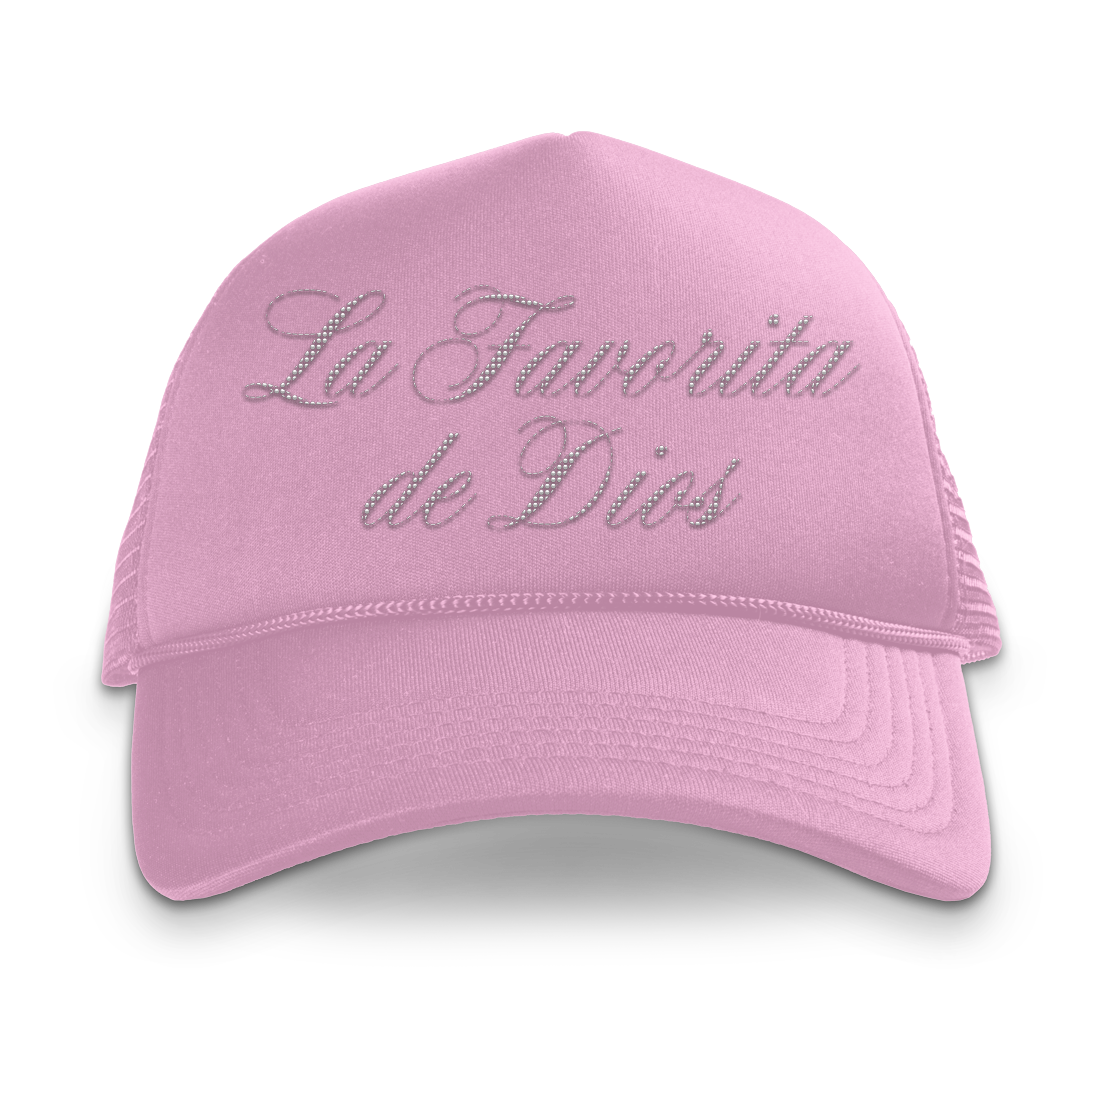 La Favorita De Dios Rhinestone Trucker Hat